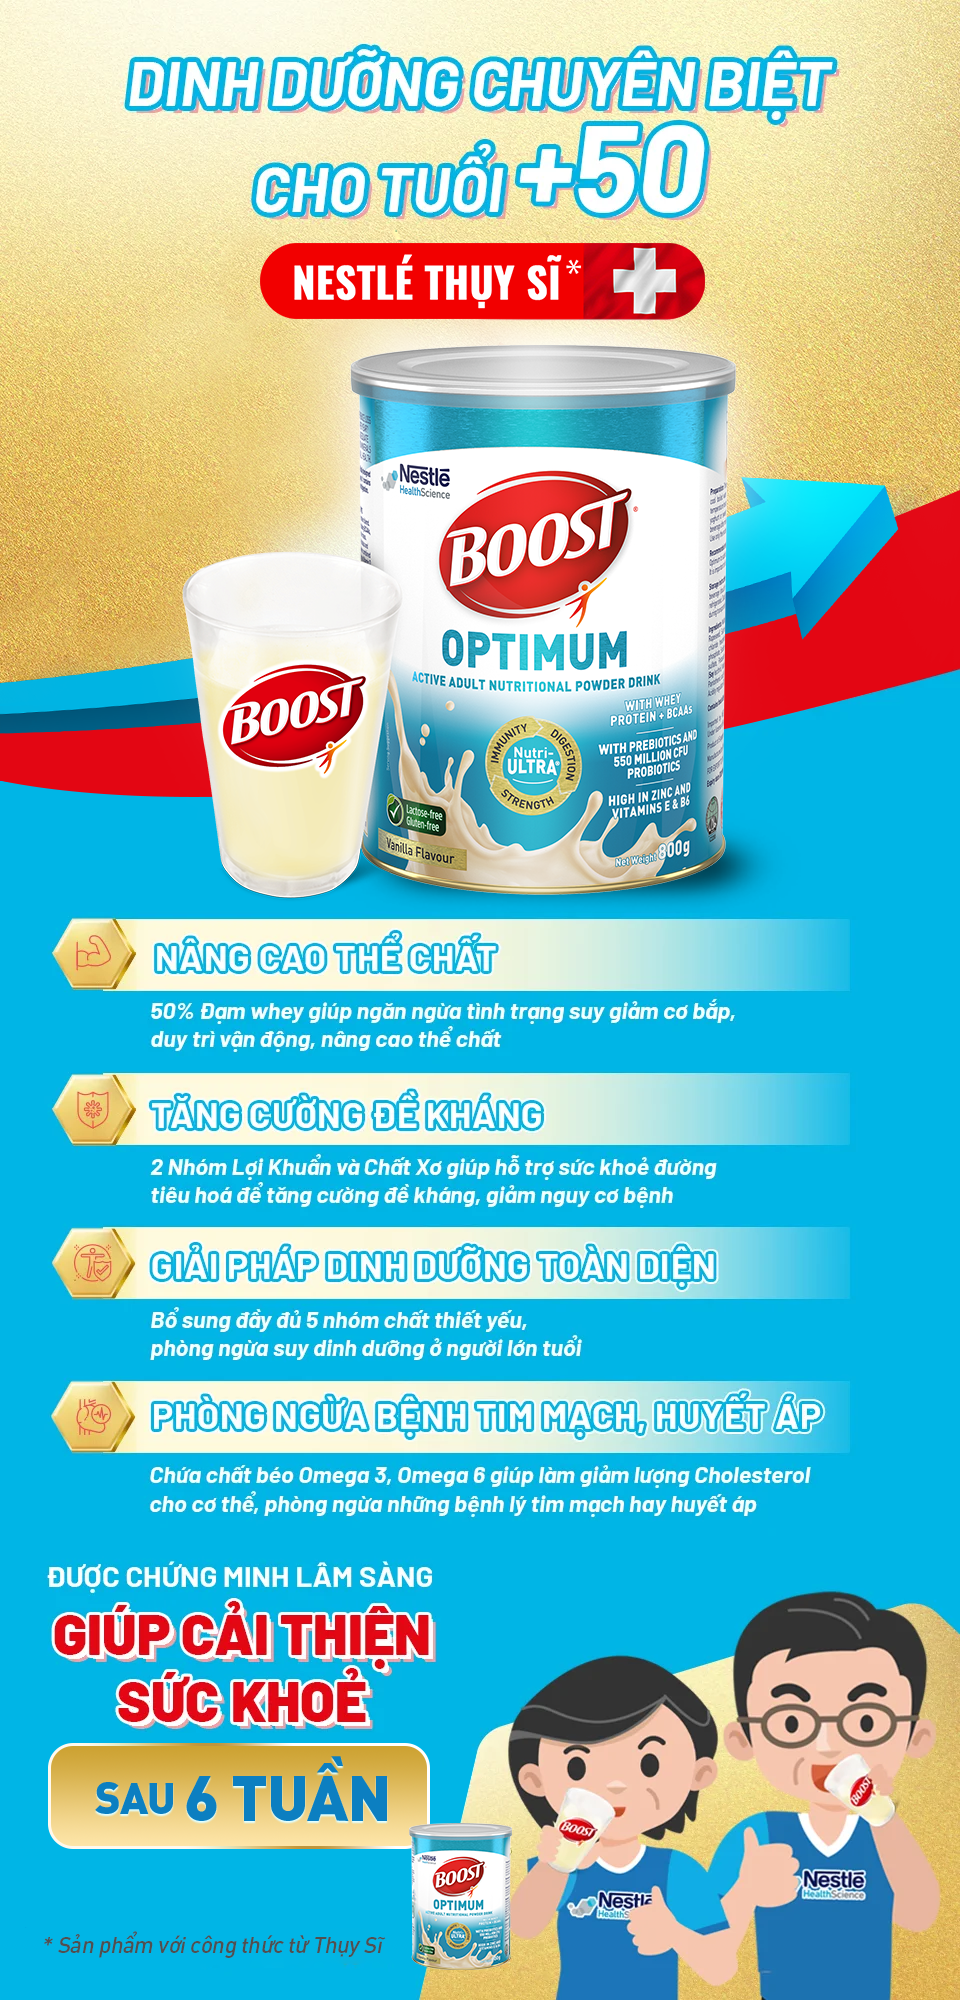 Boost Optimum - Dinh dưỡng chuyên biệt từ Nestlé Thụy Sĩ cho tuổi 50+